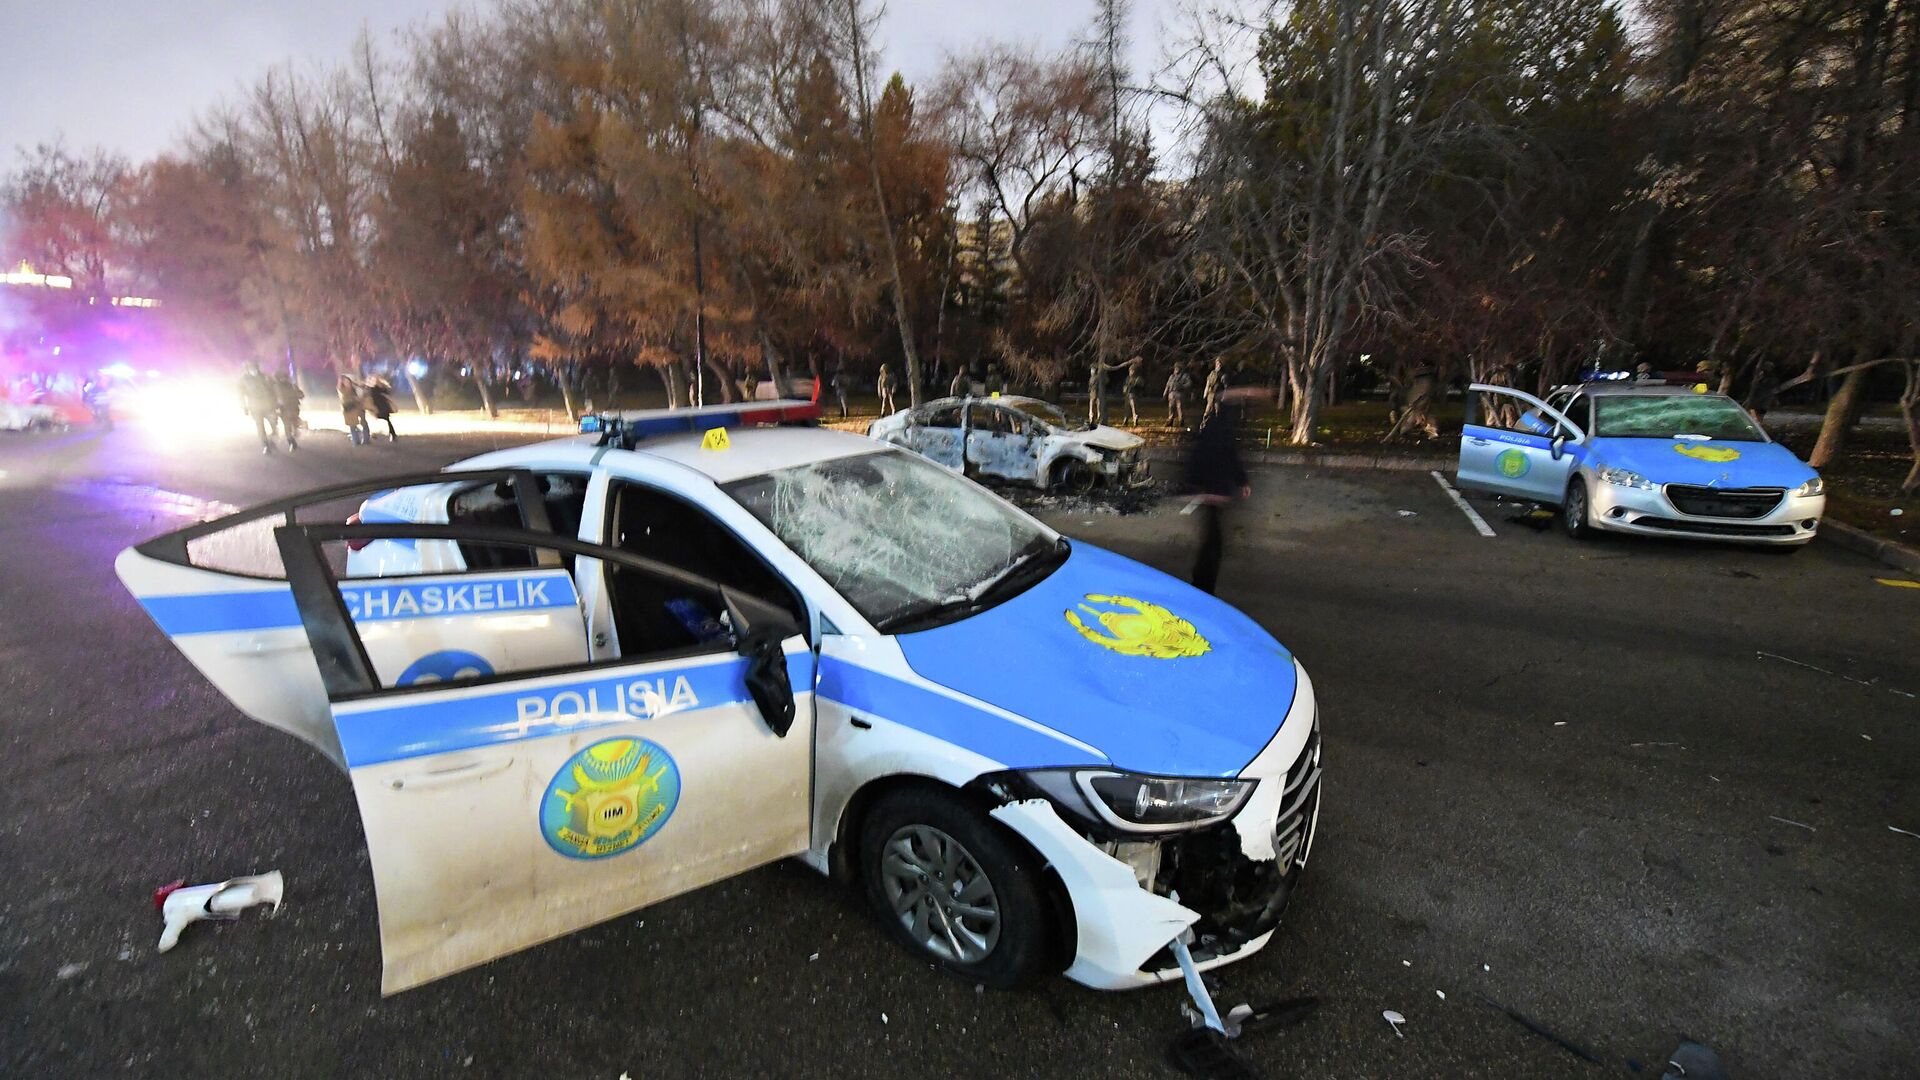 Поврежденные полицейские машины на улице Алма-Аты, Казахстан - РИА Новости, 1920, 06.01.2022